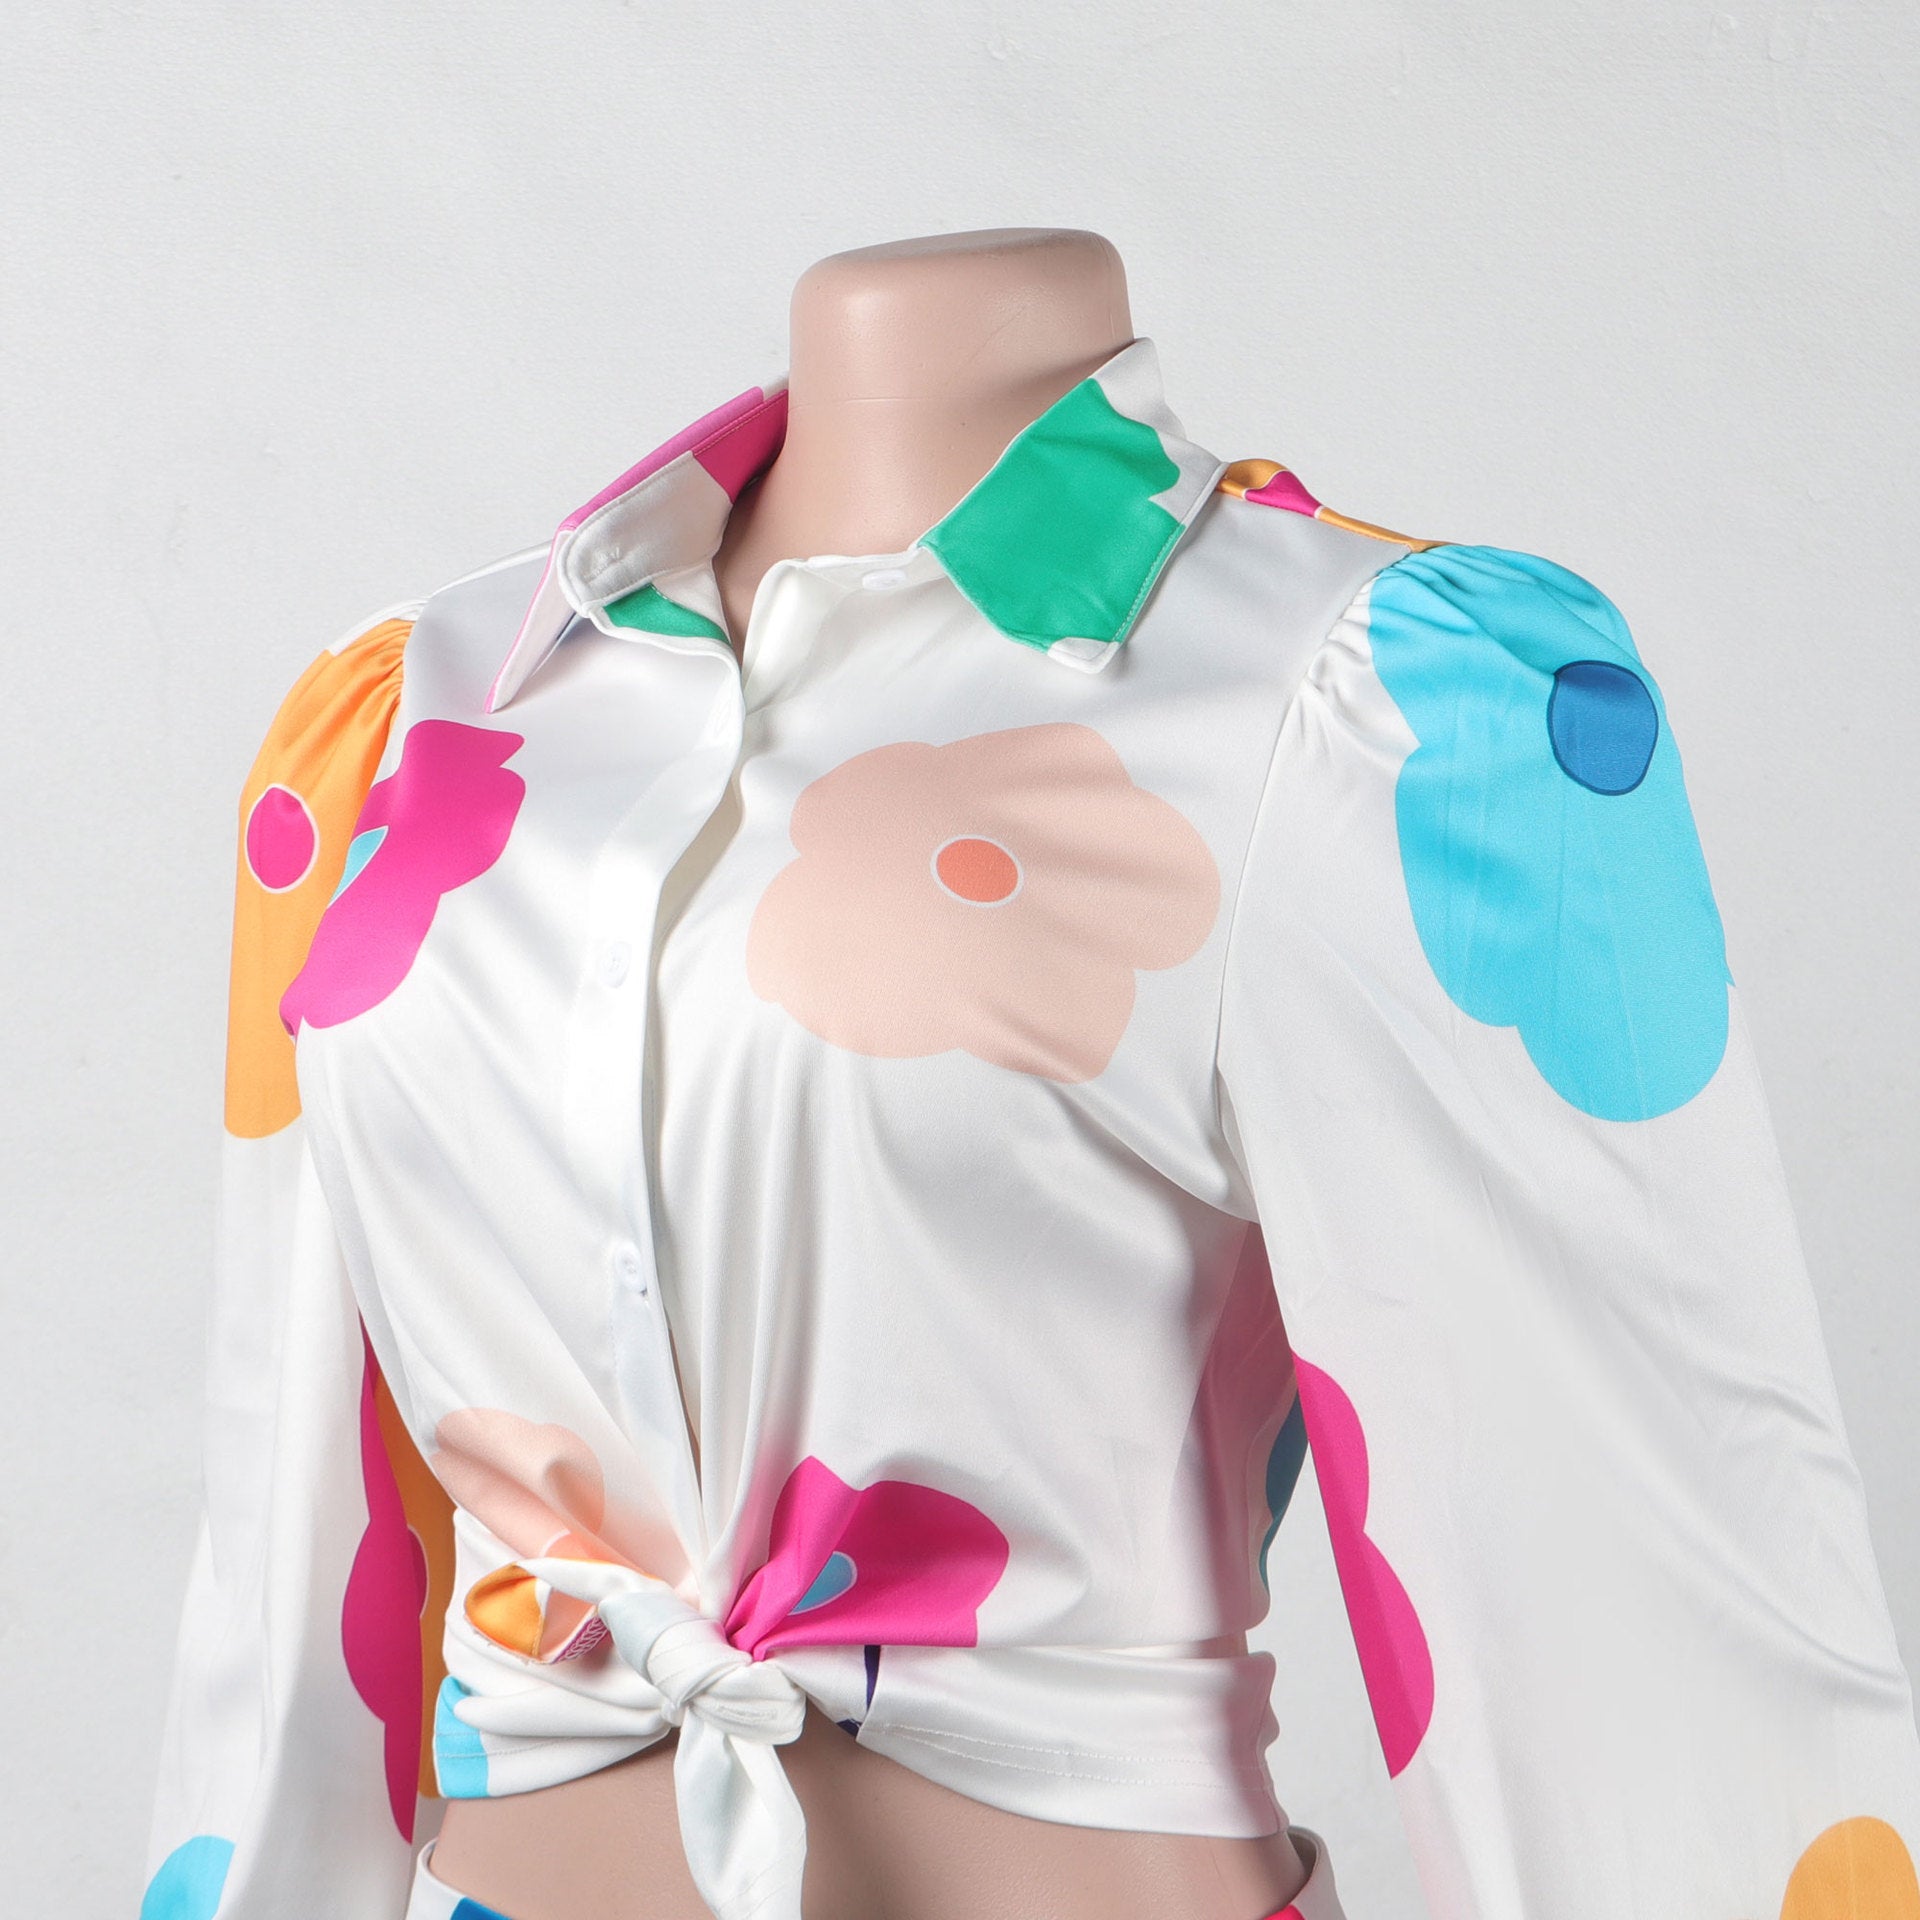 Lovemi -  Women's Fashion Color Printed Shirt Suit Two-piece Set